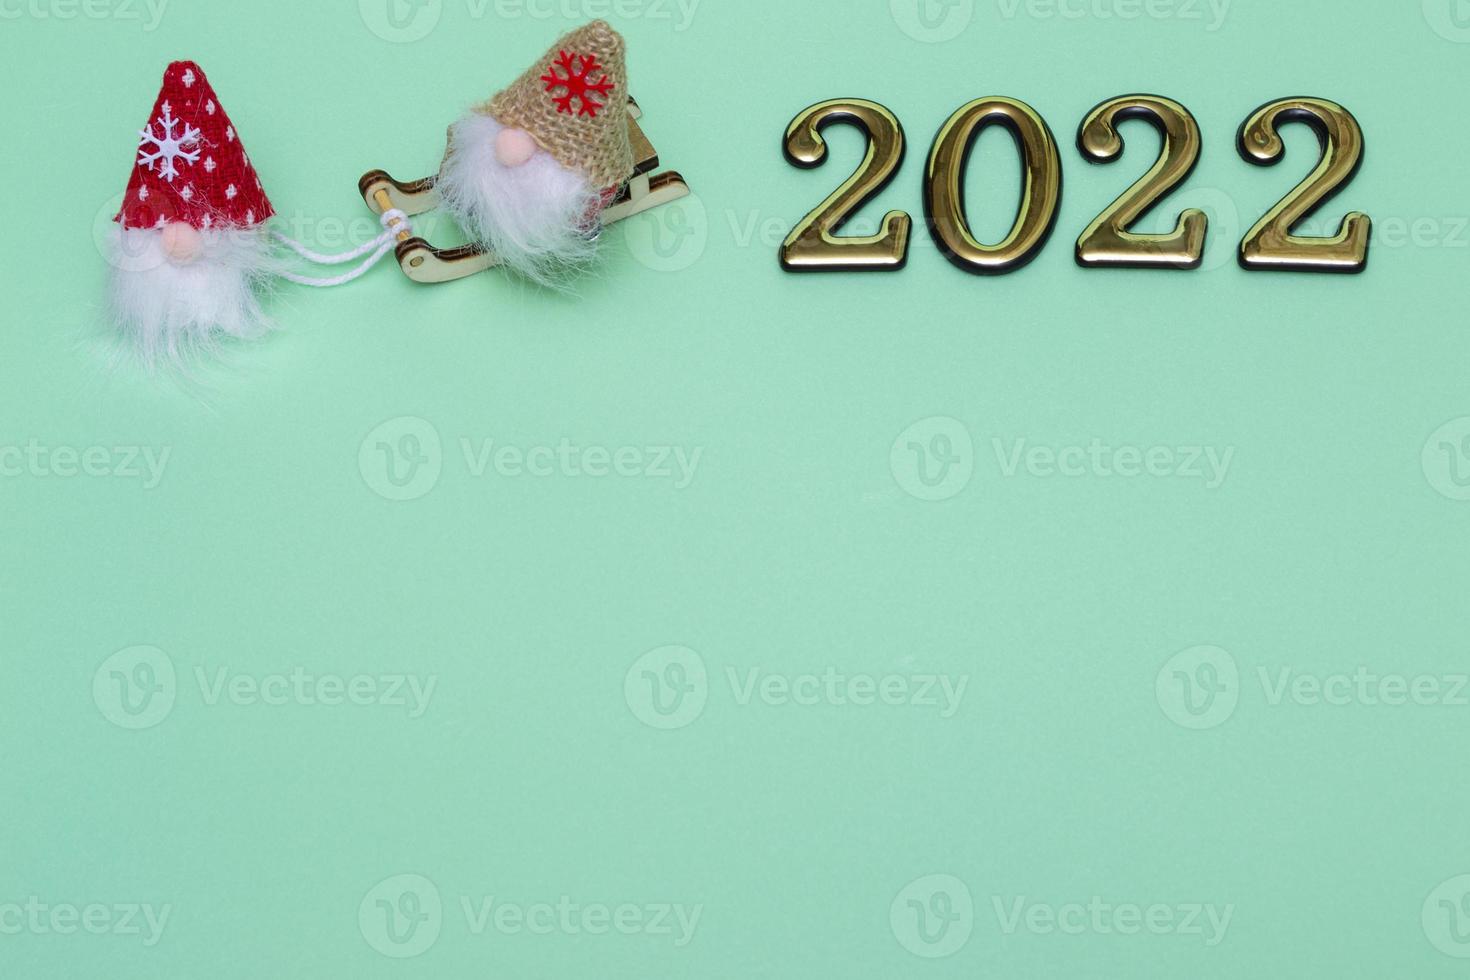 gnomi di natale sulla slitta con numeri d'oro 2022 su sfondo blu con posto per il testo foto